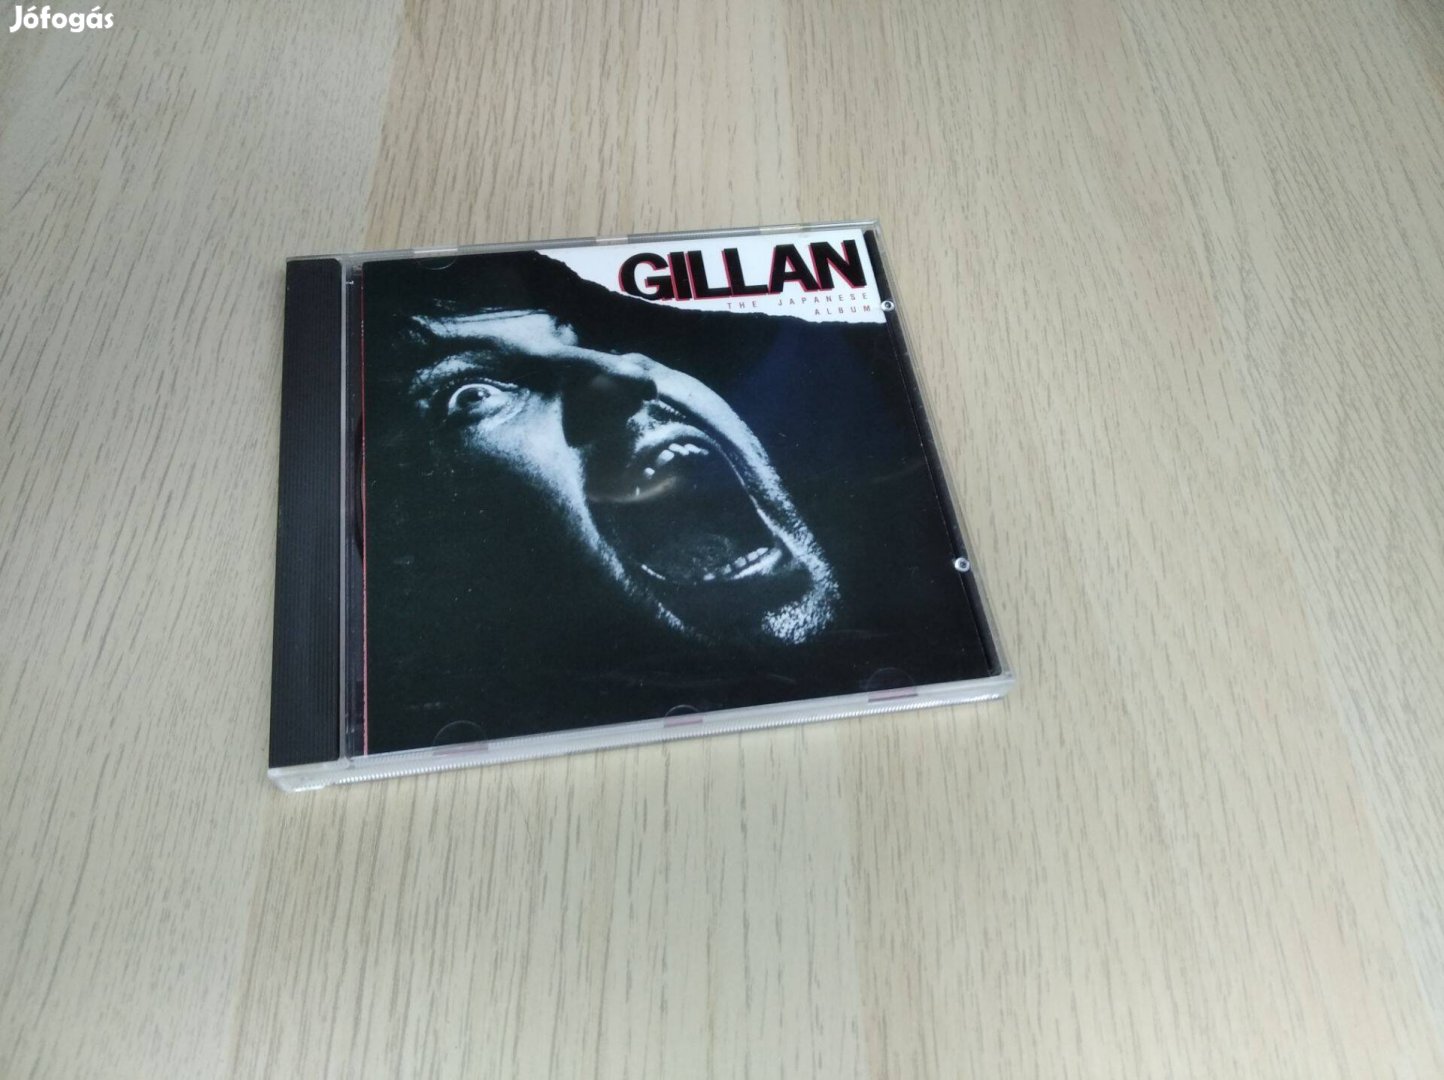 Gillan - Gillan - The Japanese Album / CD